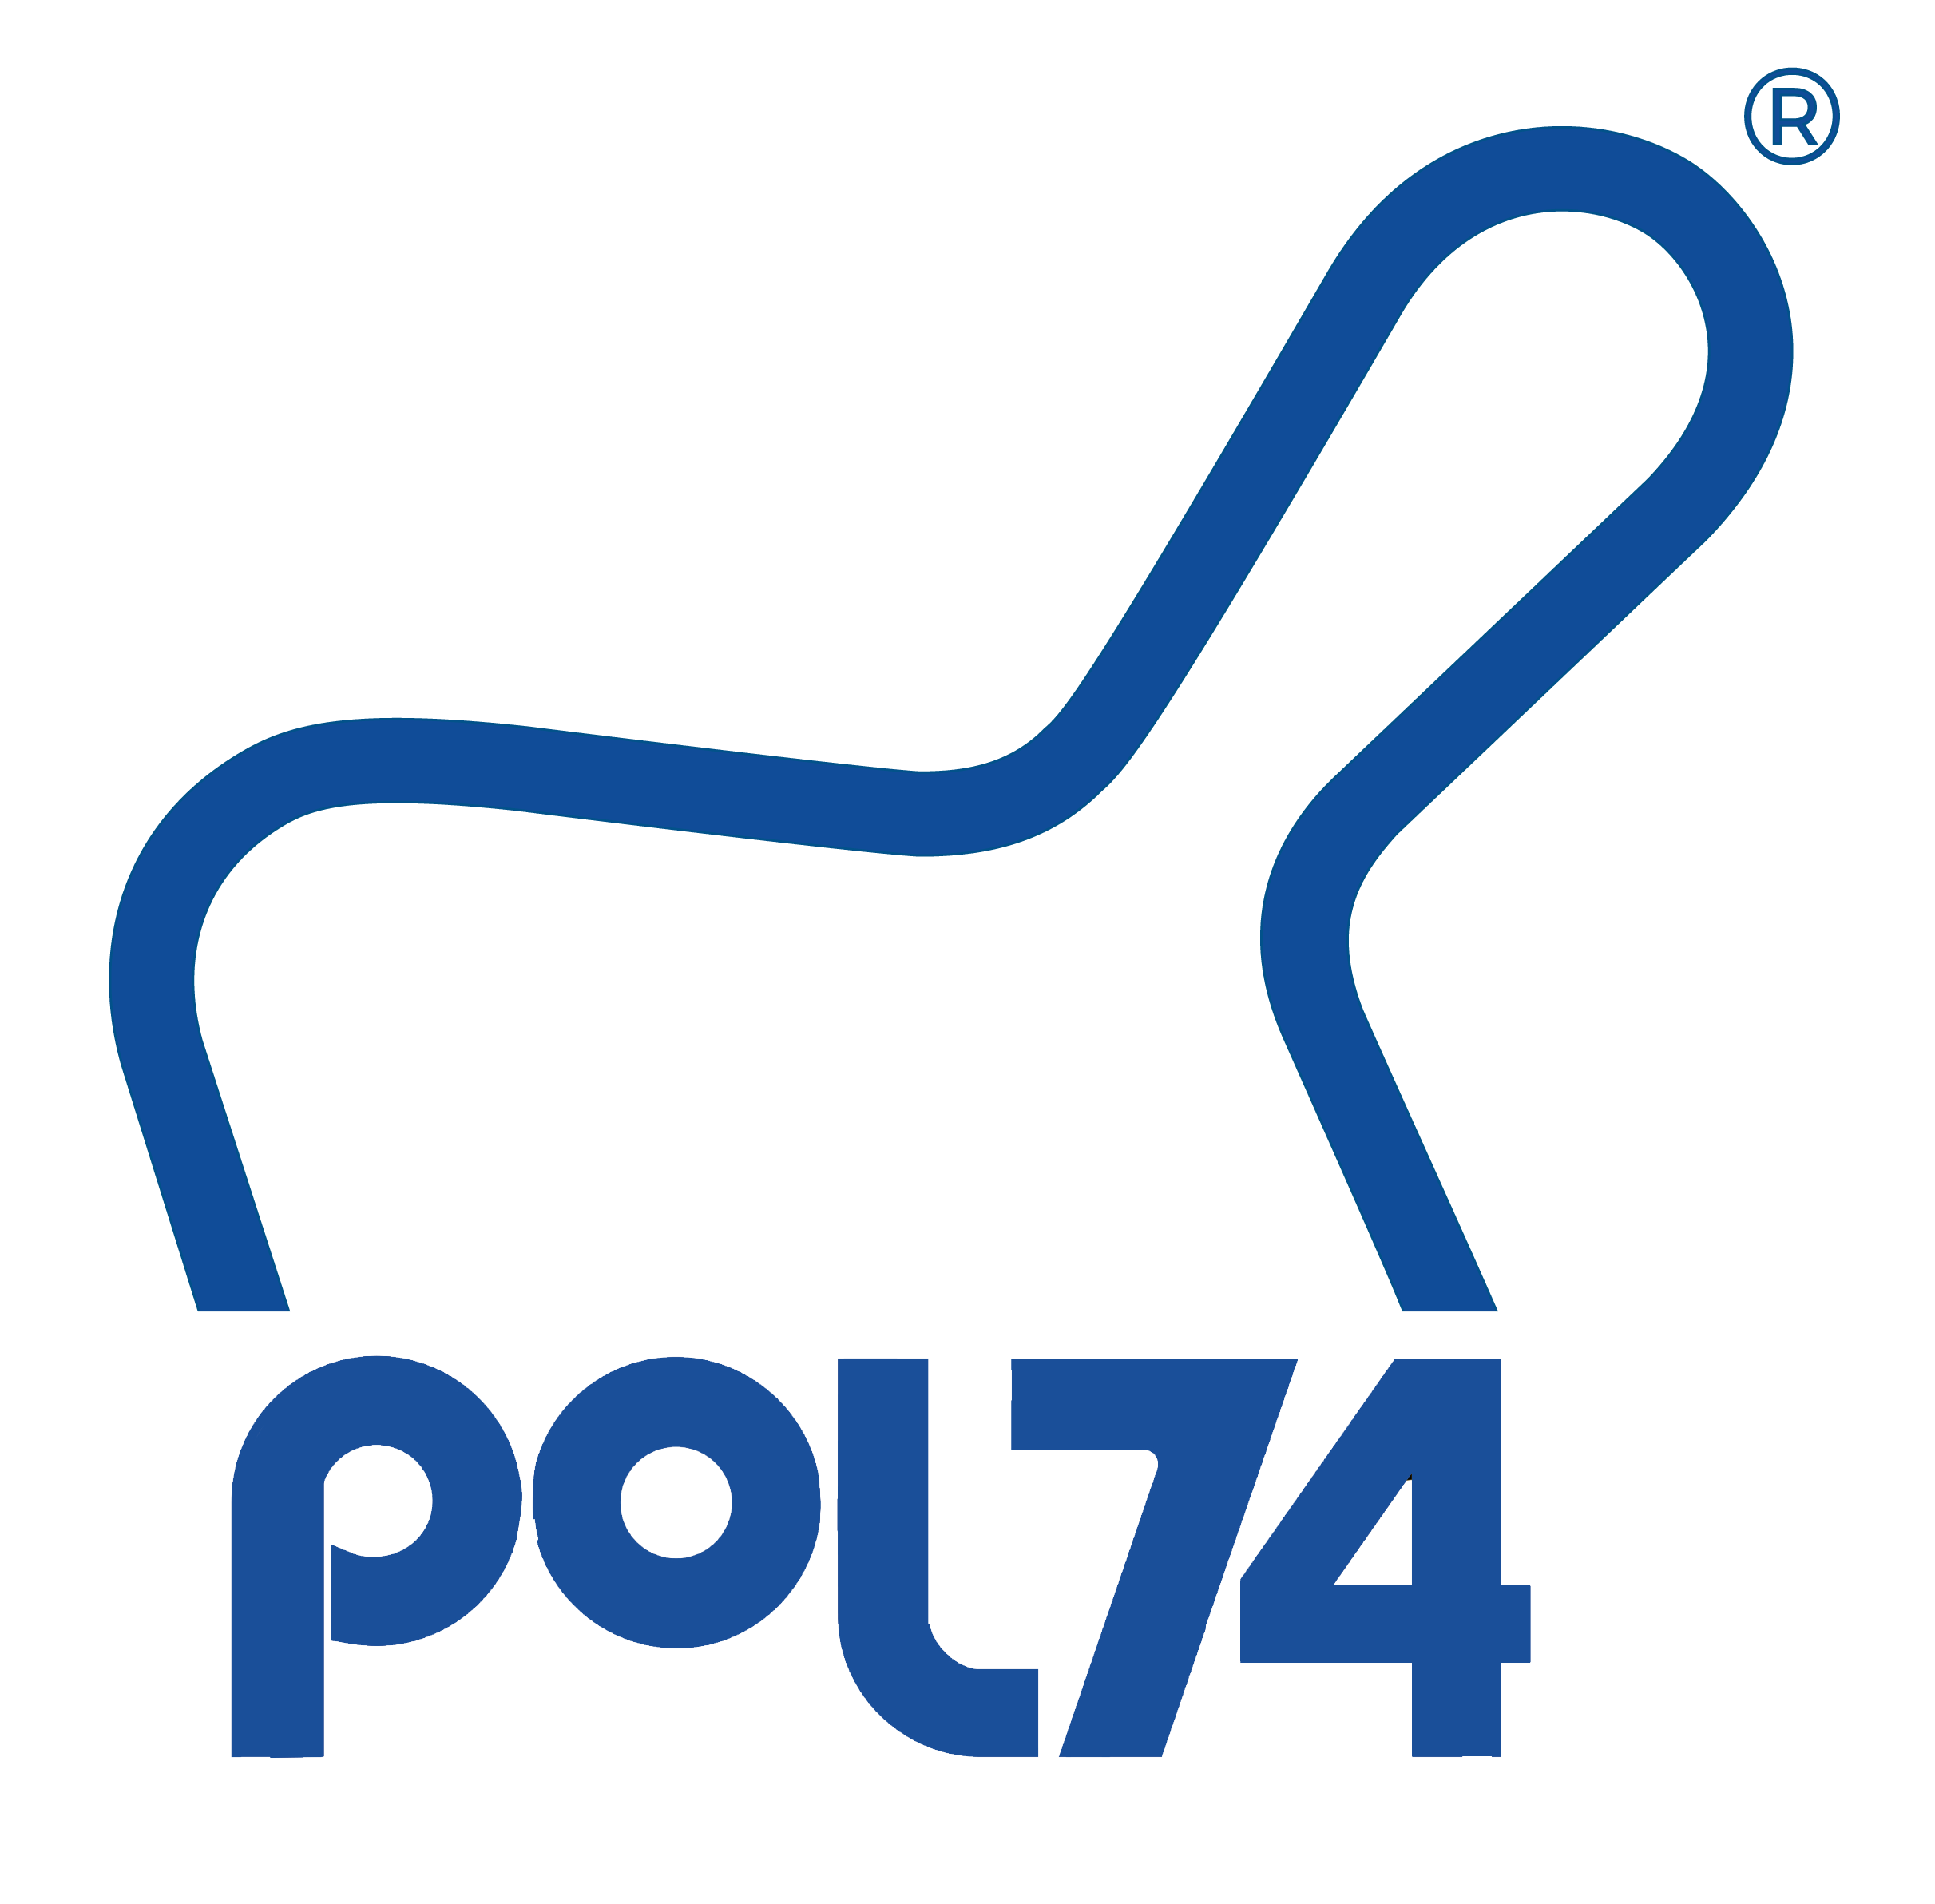 Pol74